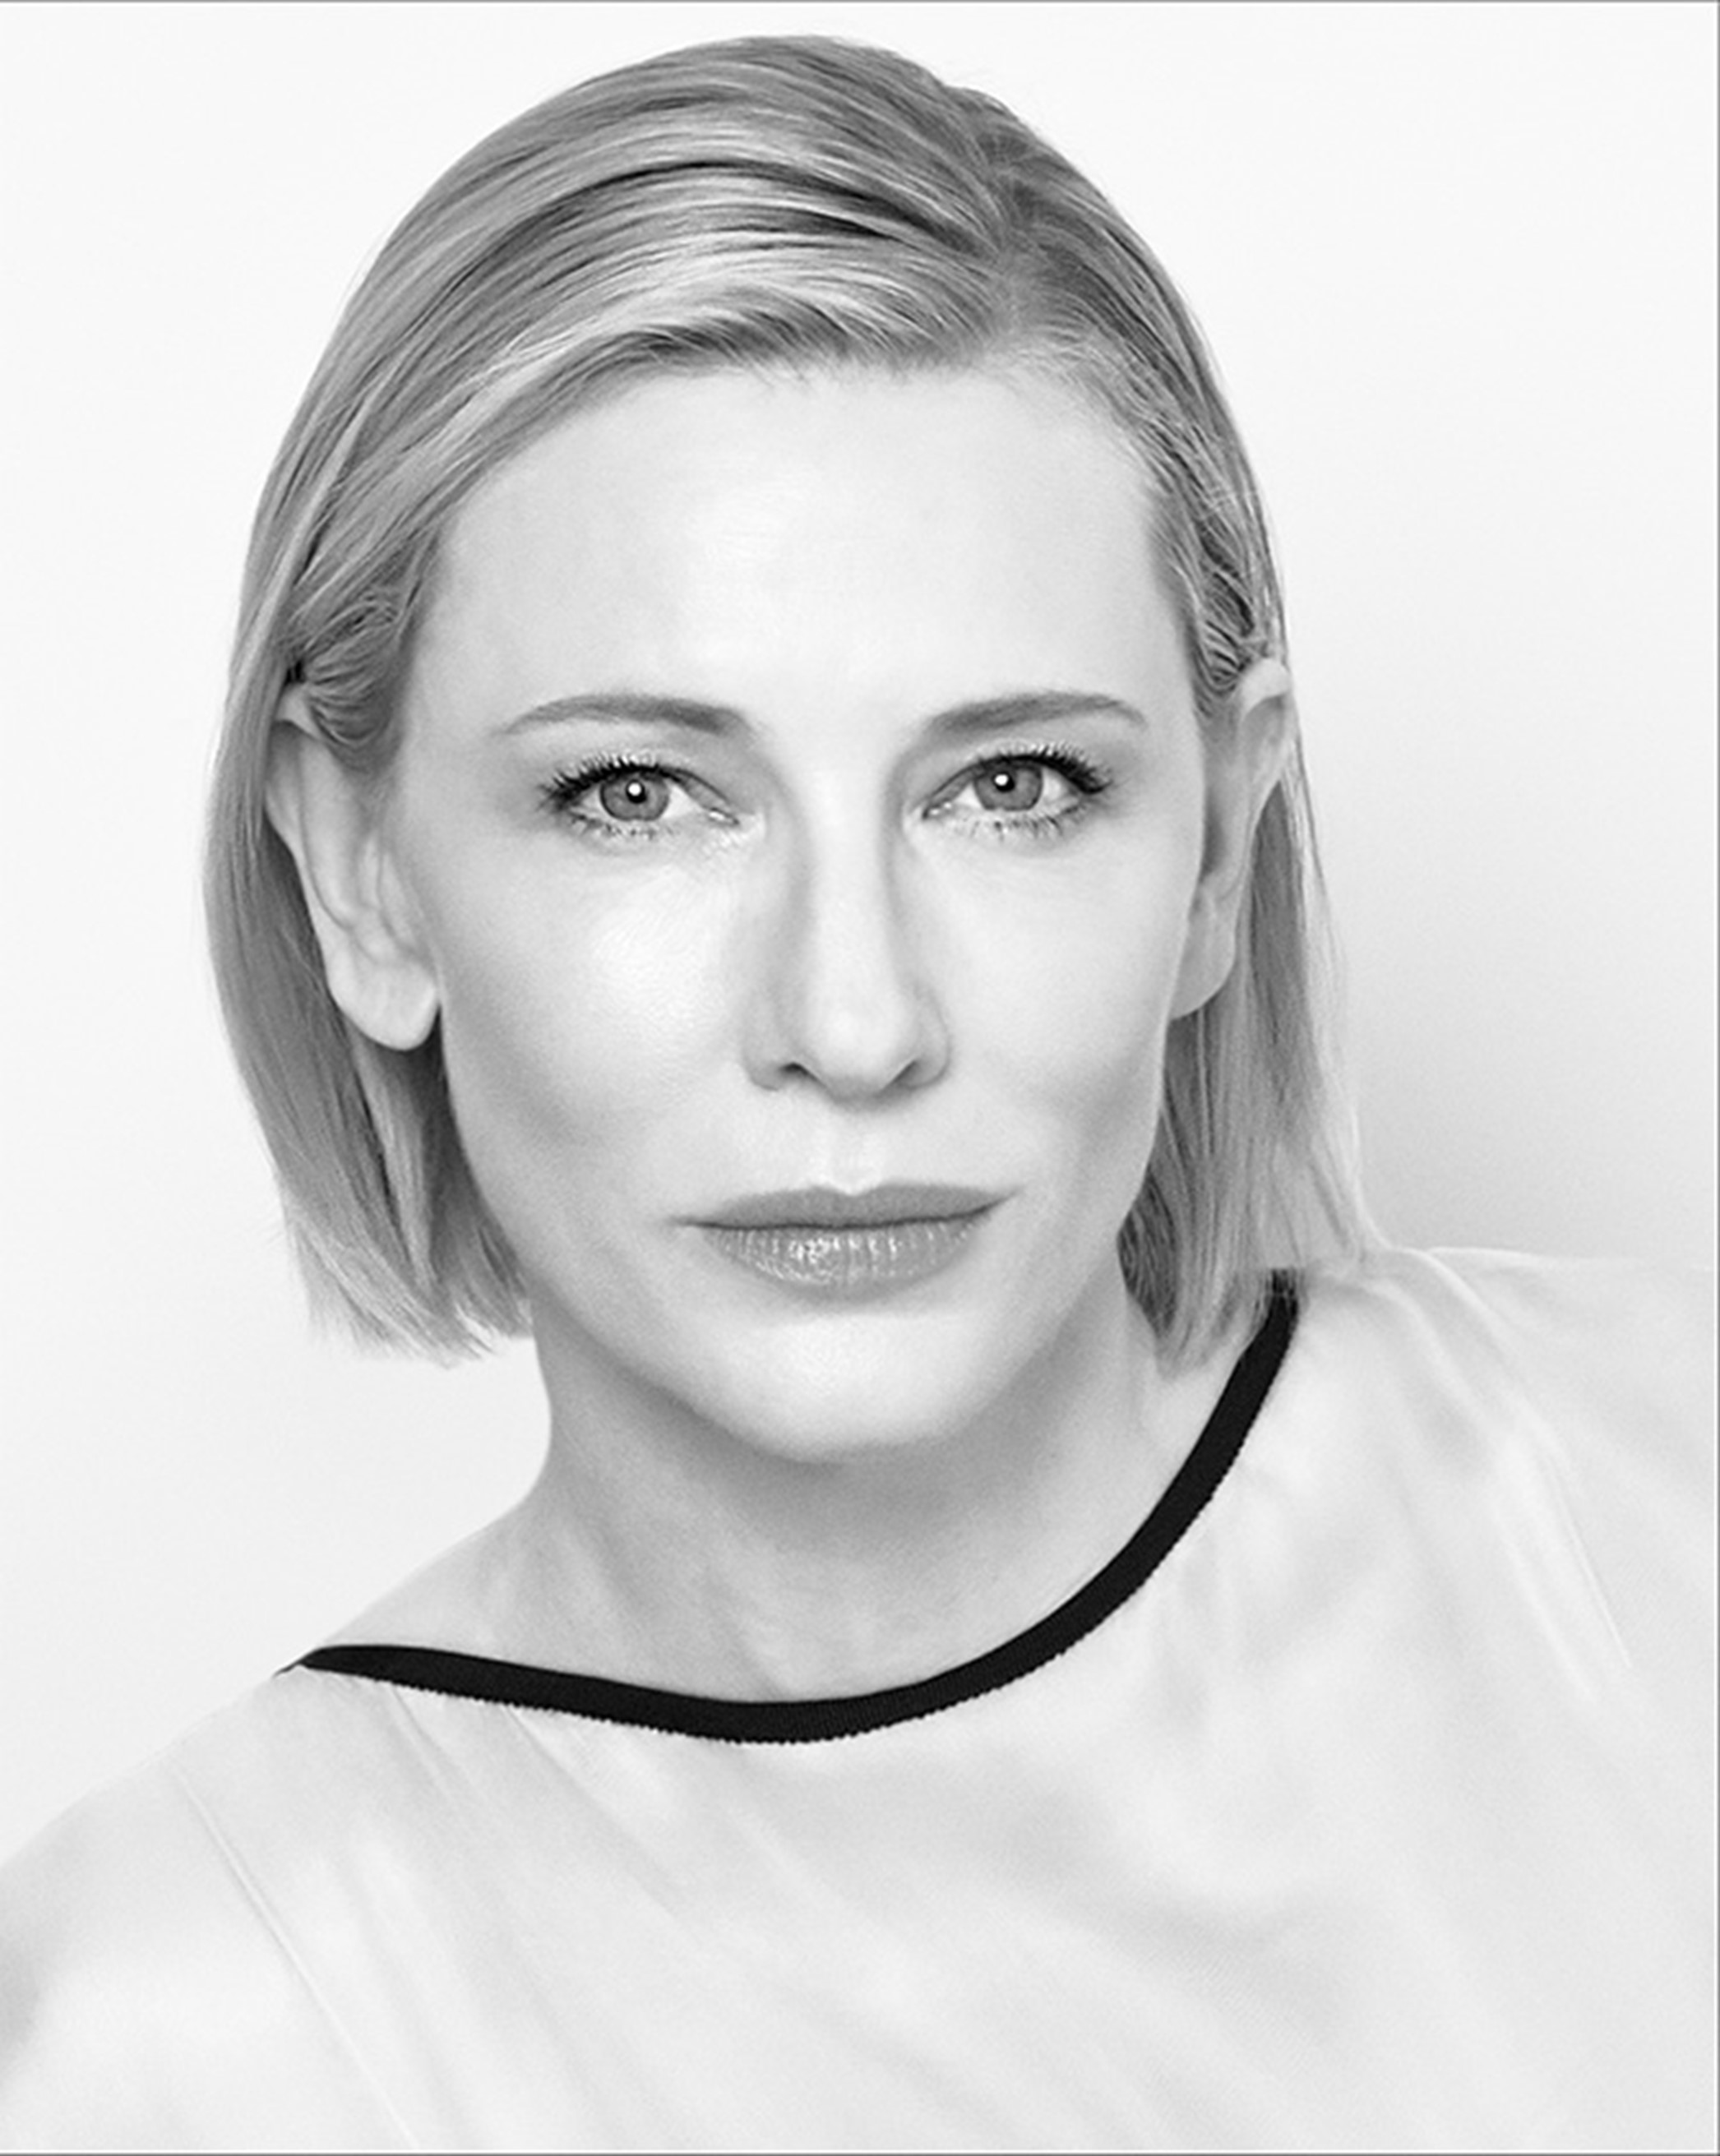 Cate Blanchett recibirá el primer Goya Internacional el 12 de febrero en Valencia